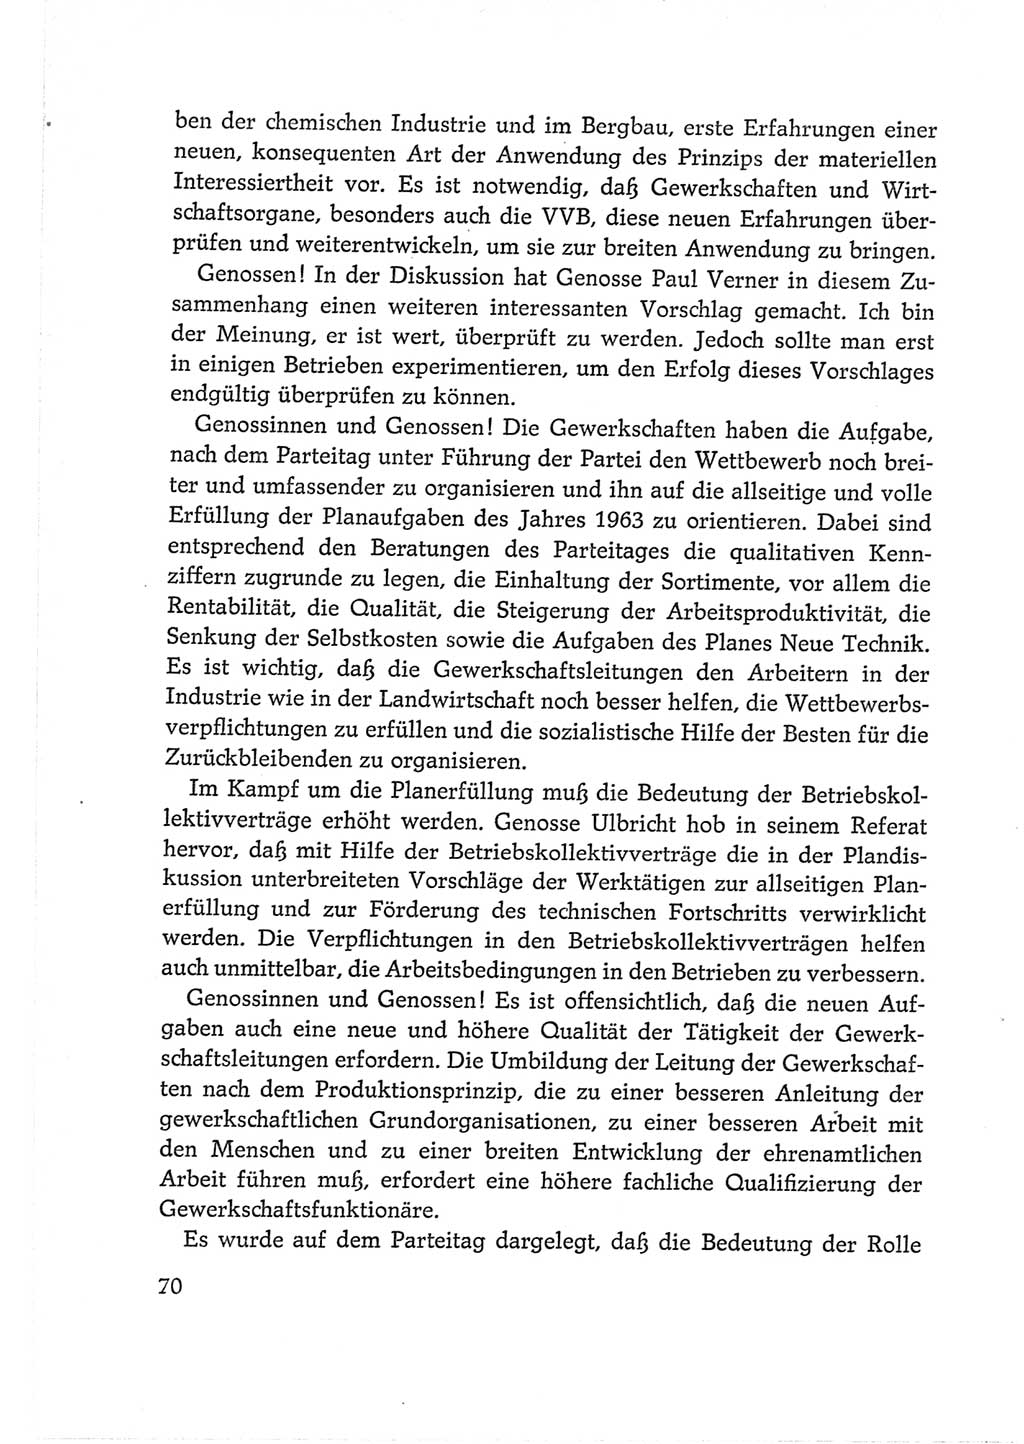 Protokoll der Verhandlungen des Ⅵ. Parteitages der Sozialistischen Einheitspartei Deutschlands (SED) [Deutsche Demokratische Republik (DDR)] 1963, Band Ⅱ, Seite 70 (Prot. Verh. Ⅵ. PT SED DDR 1963, Bd. Ⅱ, S. 70)